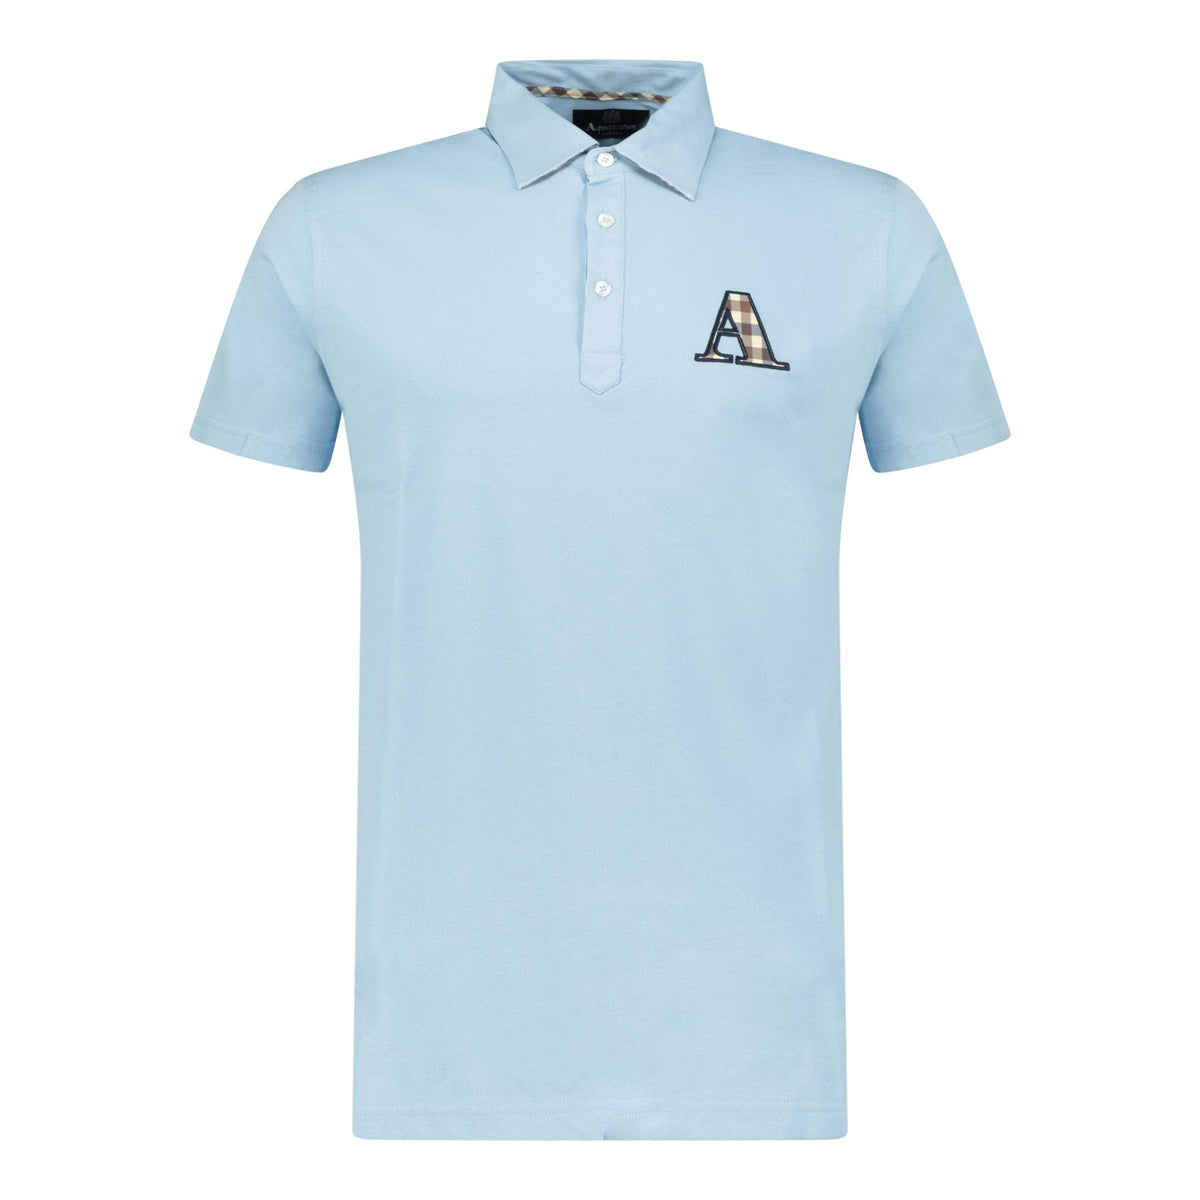 Aquascutum A Check Embroidery Logo T-Shirt Blue | Boinclo ltd